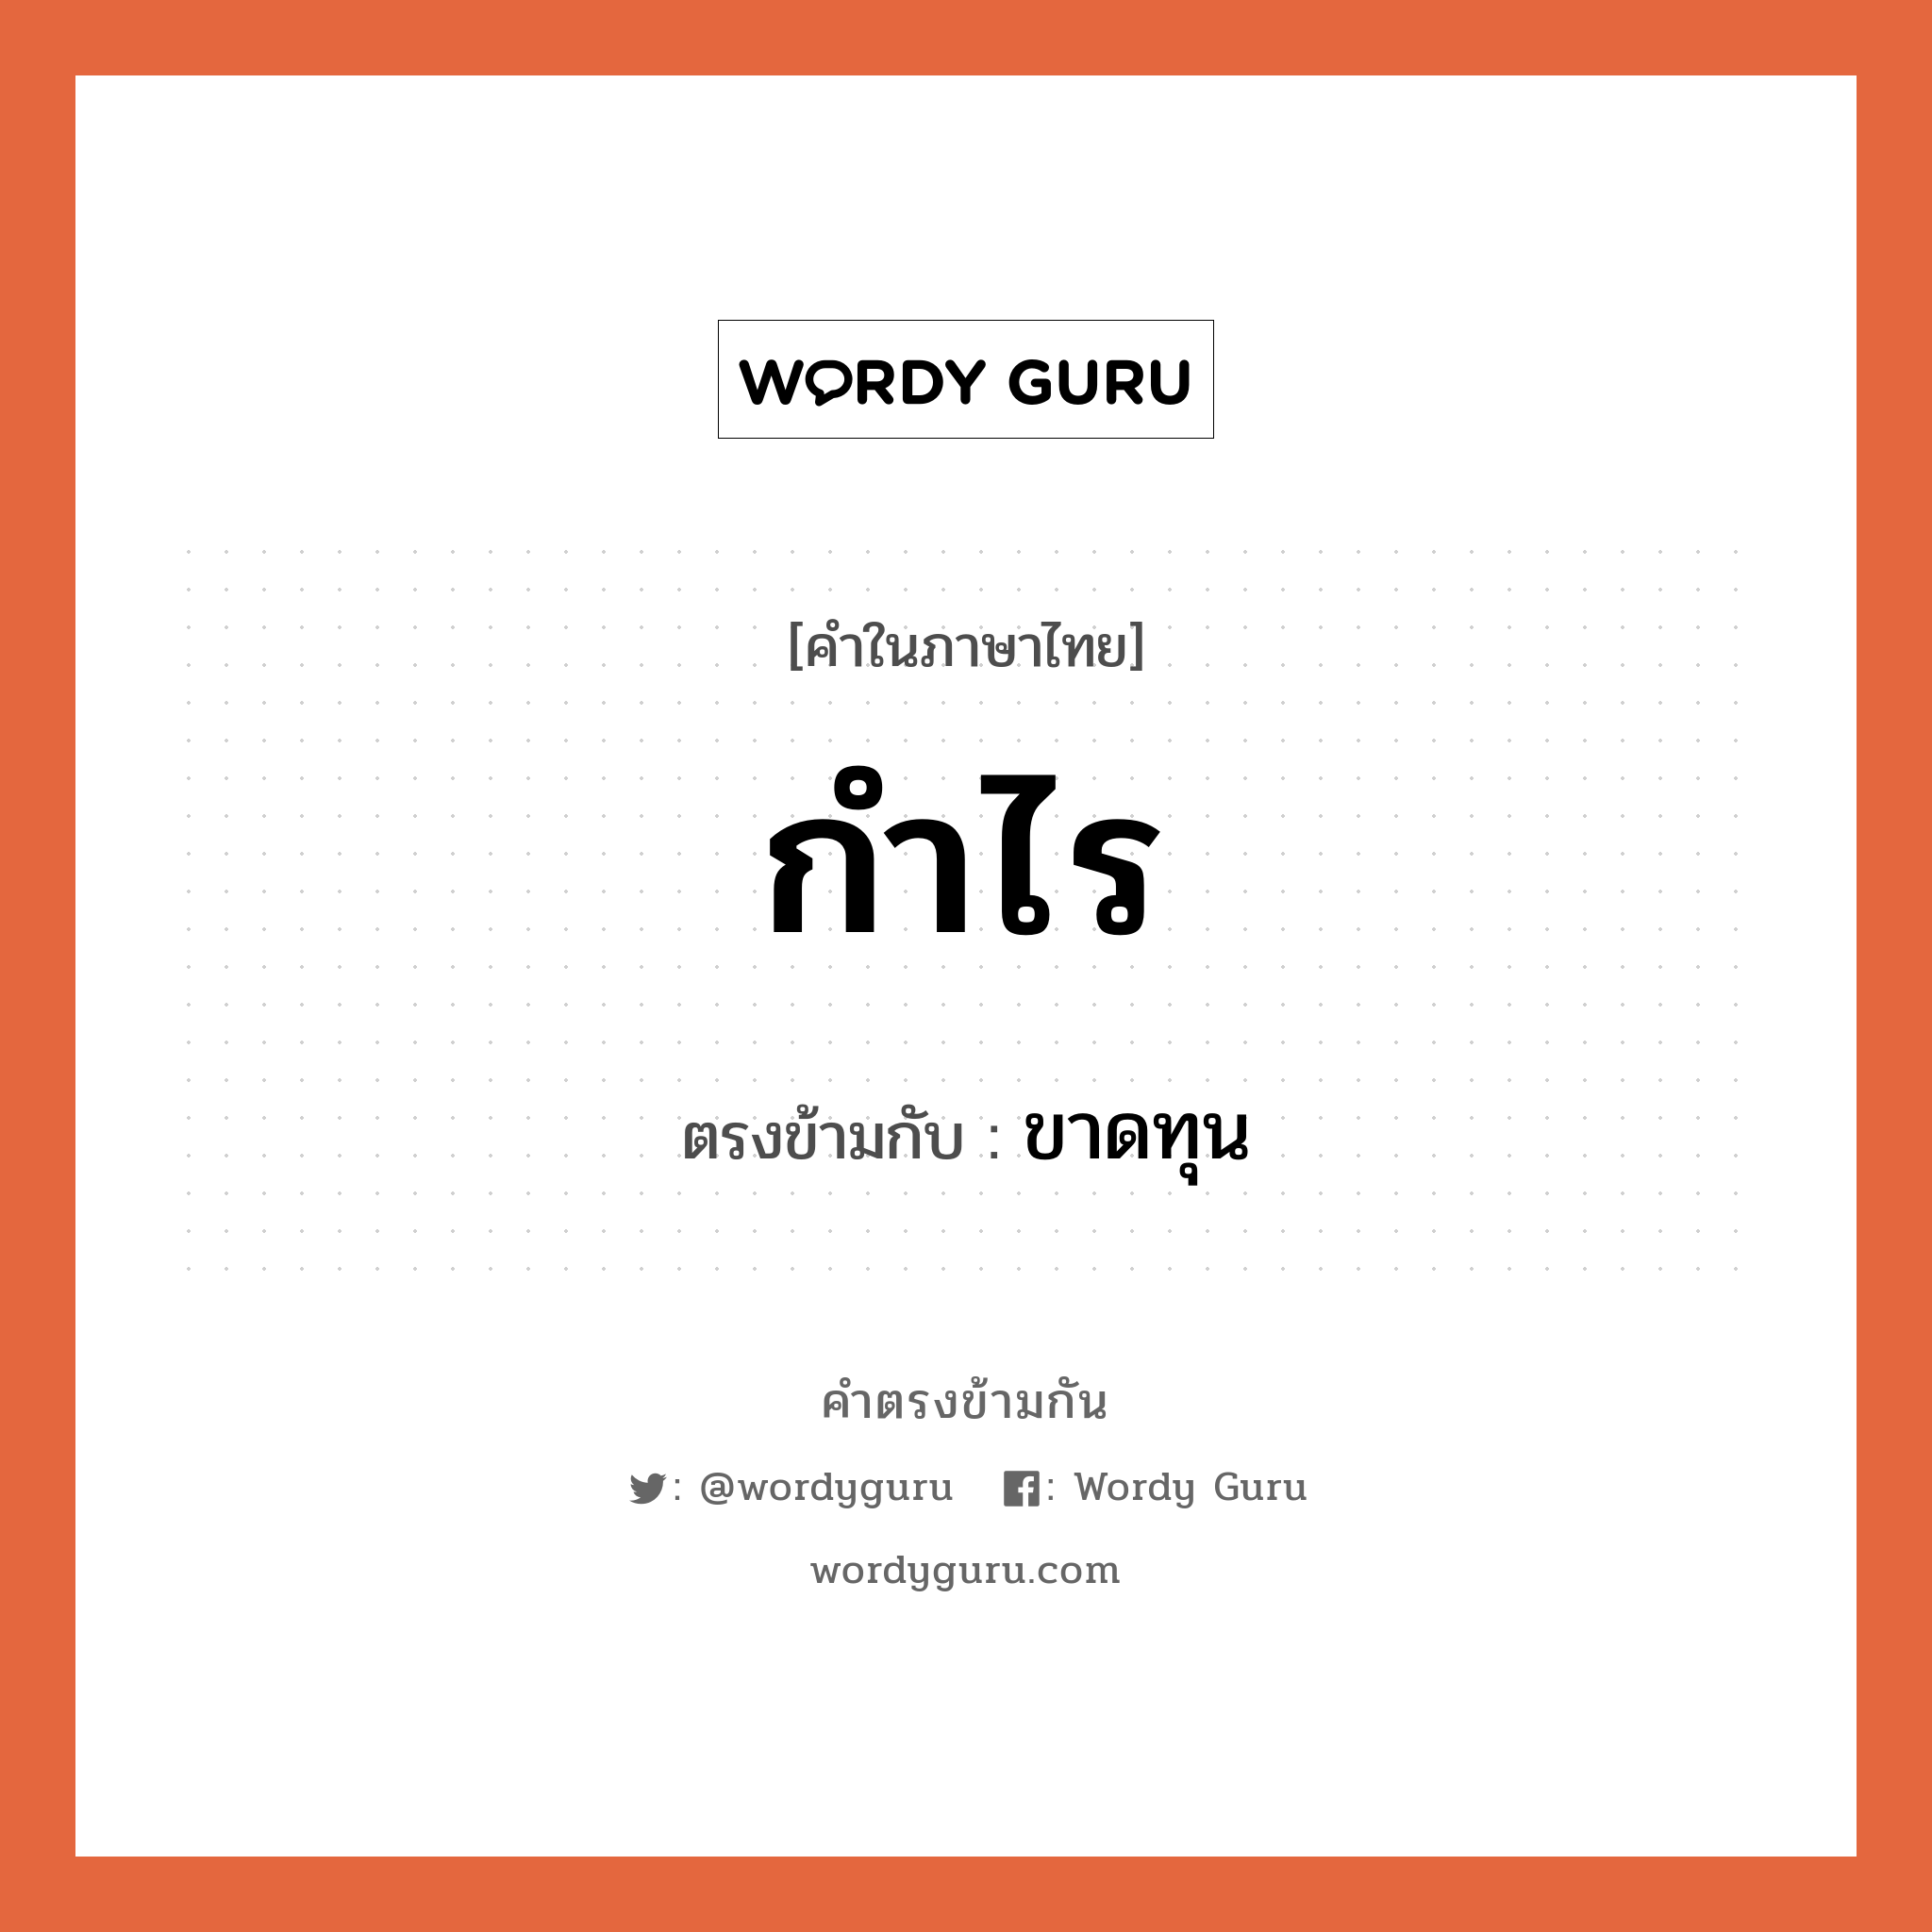 กำไร เป็นคำตรงข้ามกับคำไหนบ้าง?, คำในภาษาไทย กำไร ตรงข้ามกับ ขาดทุน หมวด ขาดทุน